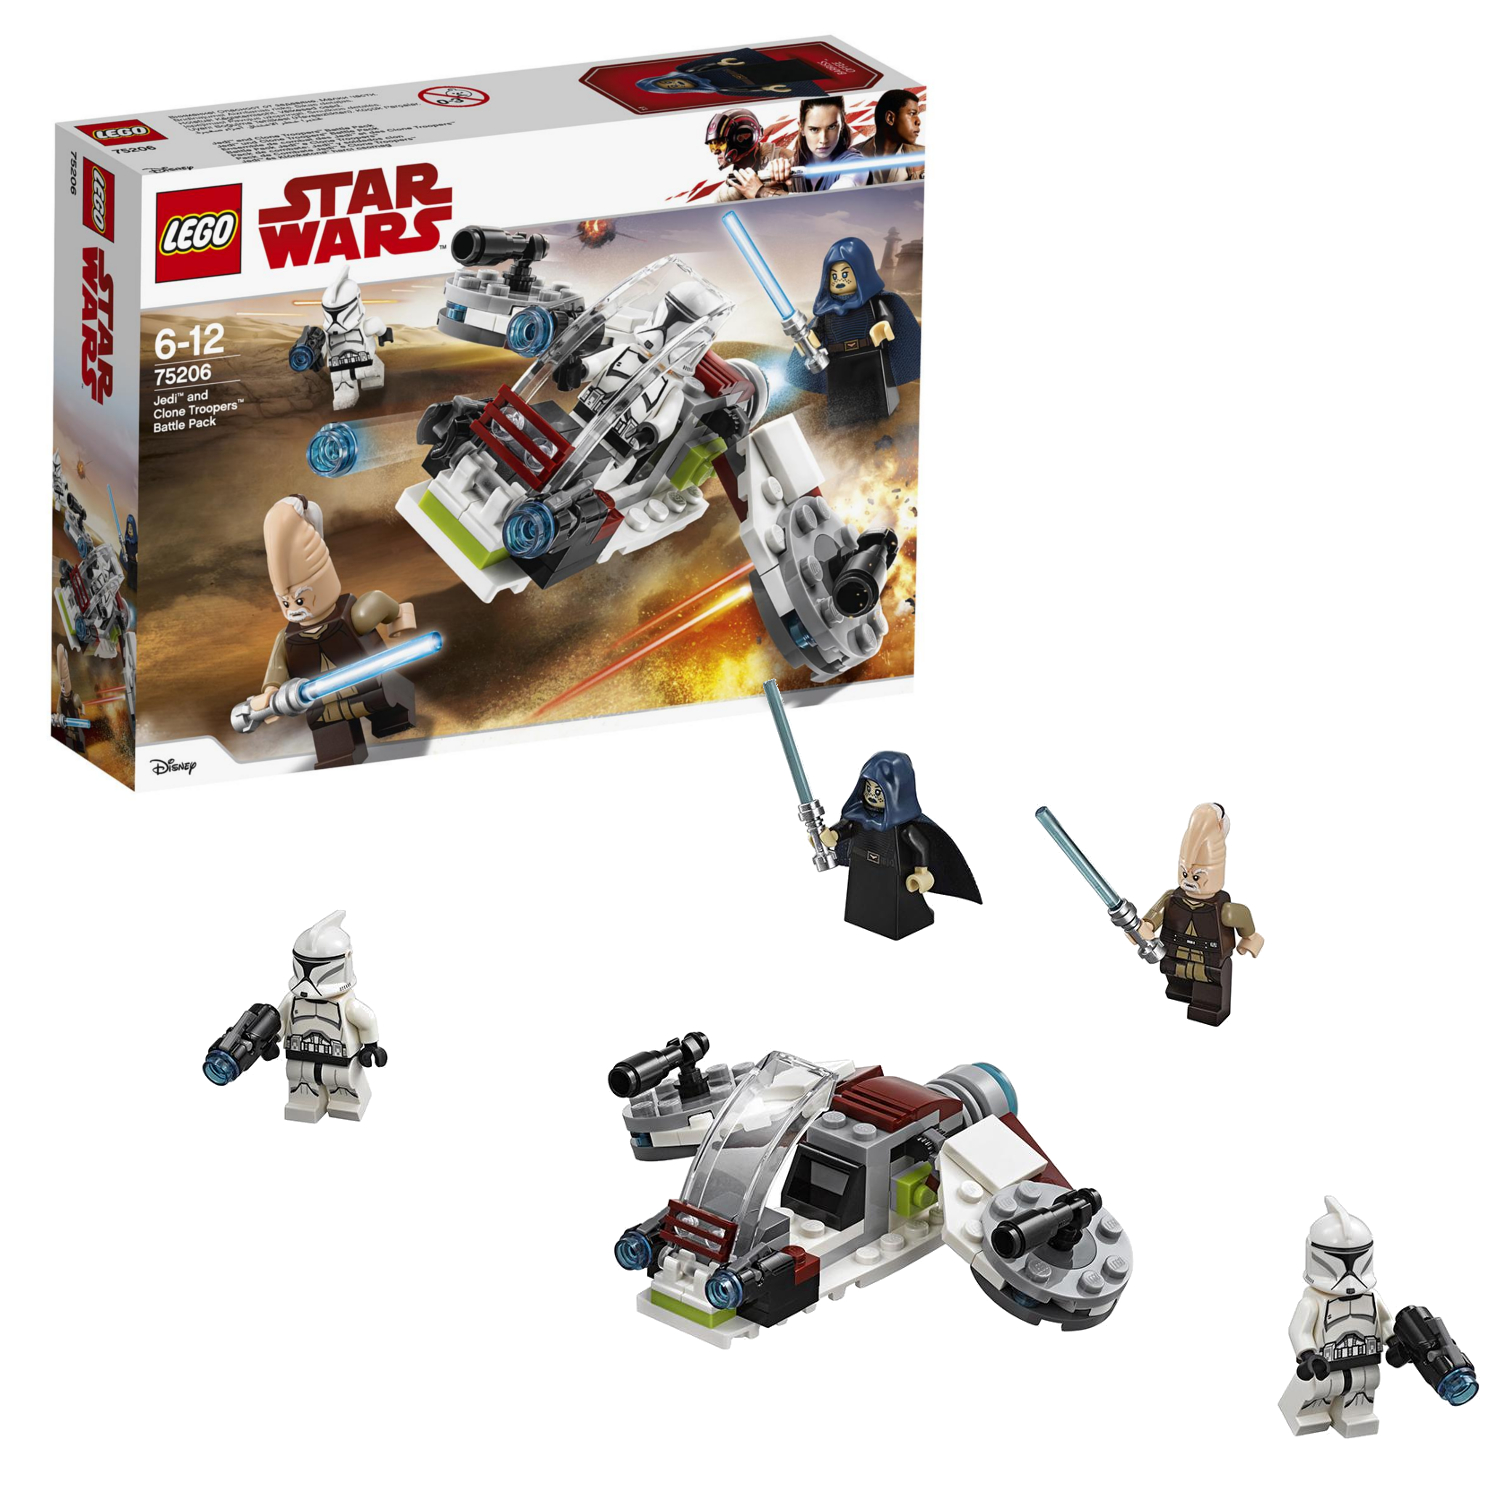 Lego Star Wars 75206 Боевой набор джедаев и клонов-пехотинцев